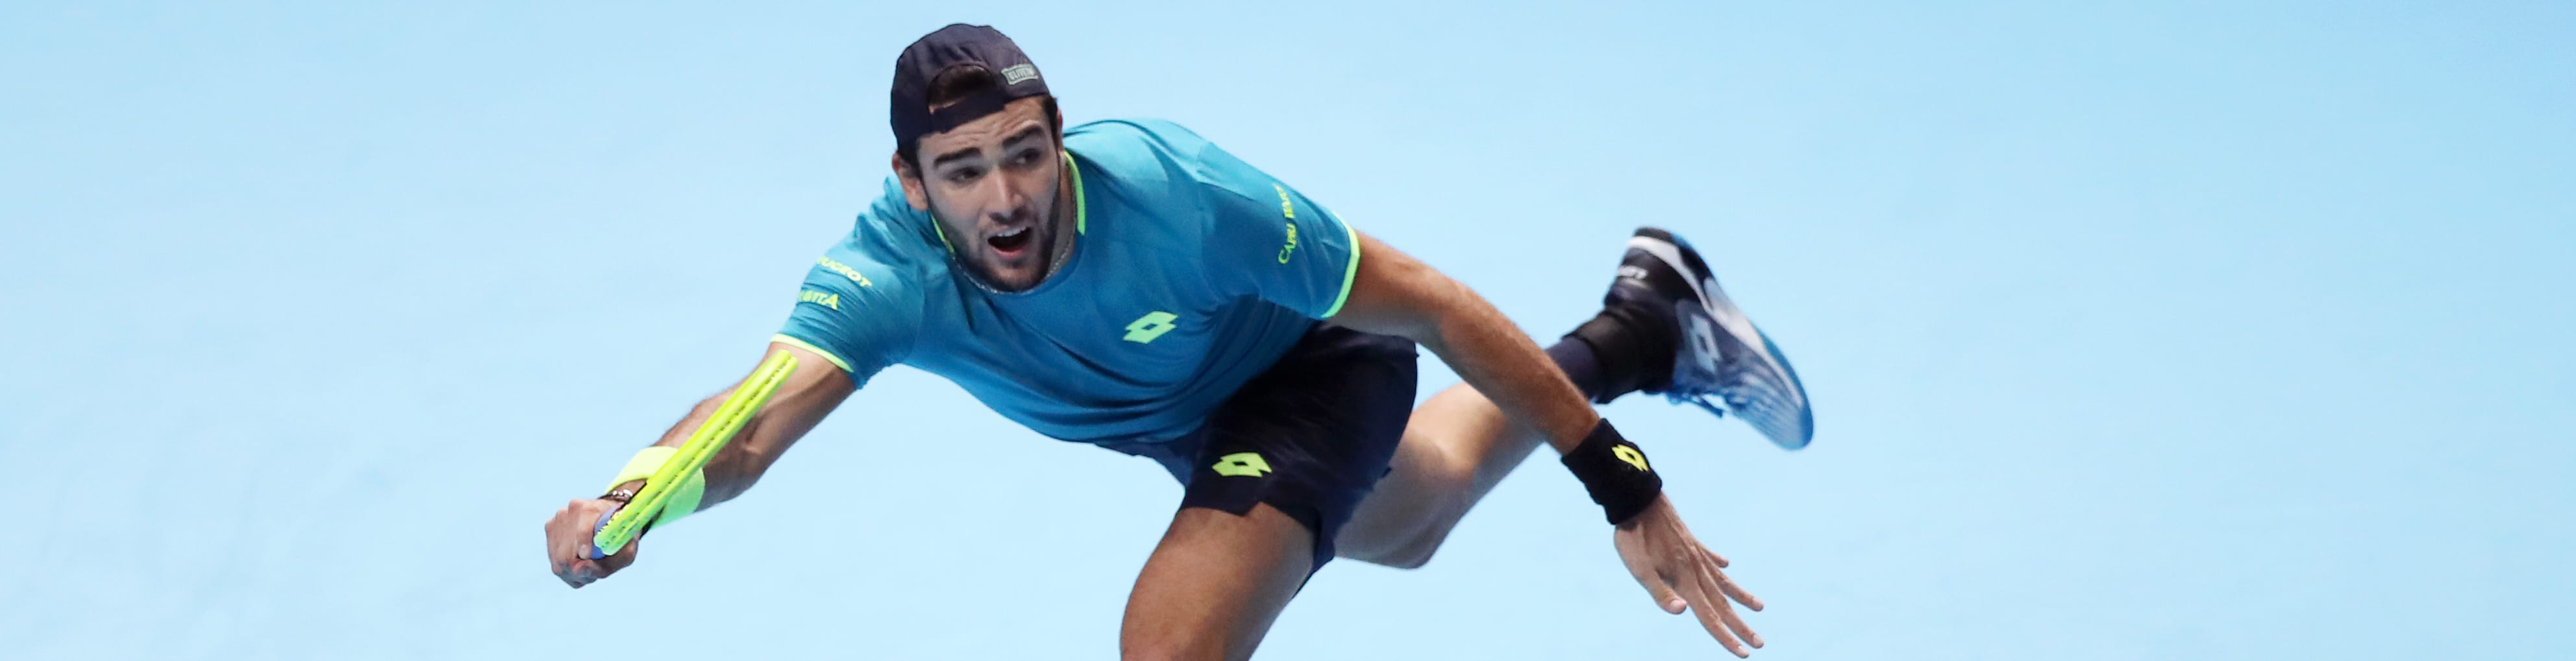 ATP Finals, day 5: Berrettini può fare comunque la storia, Federer-Djokovic spareggio a sorpresa